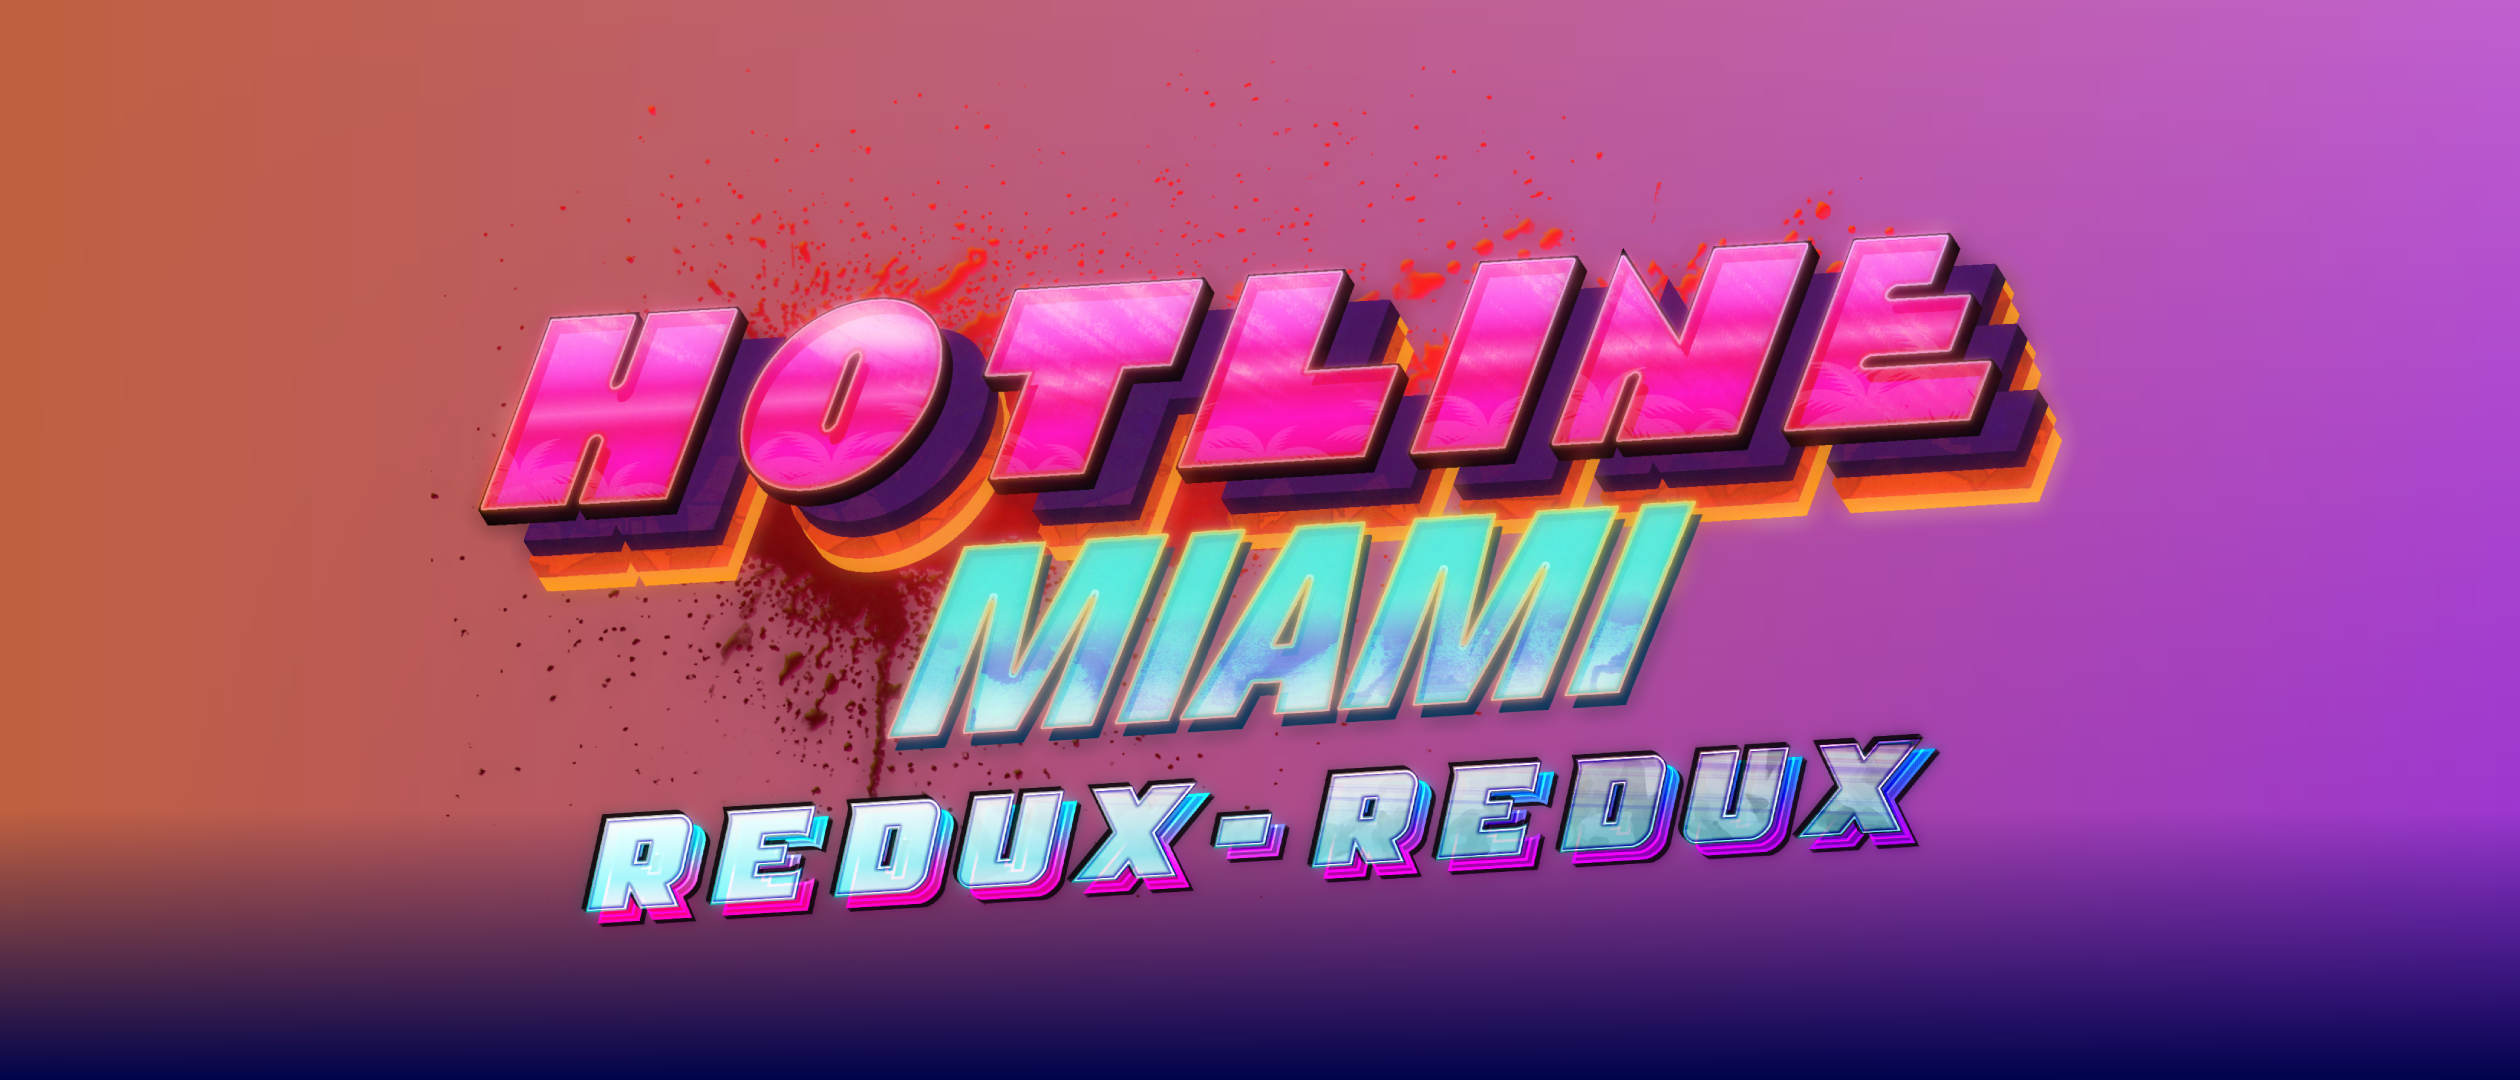 Hotline Miami: Redux-Redux